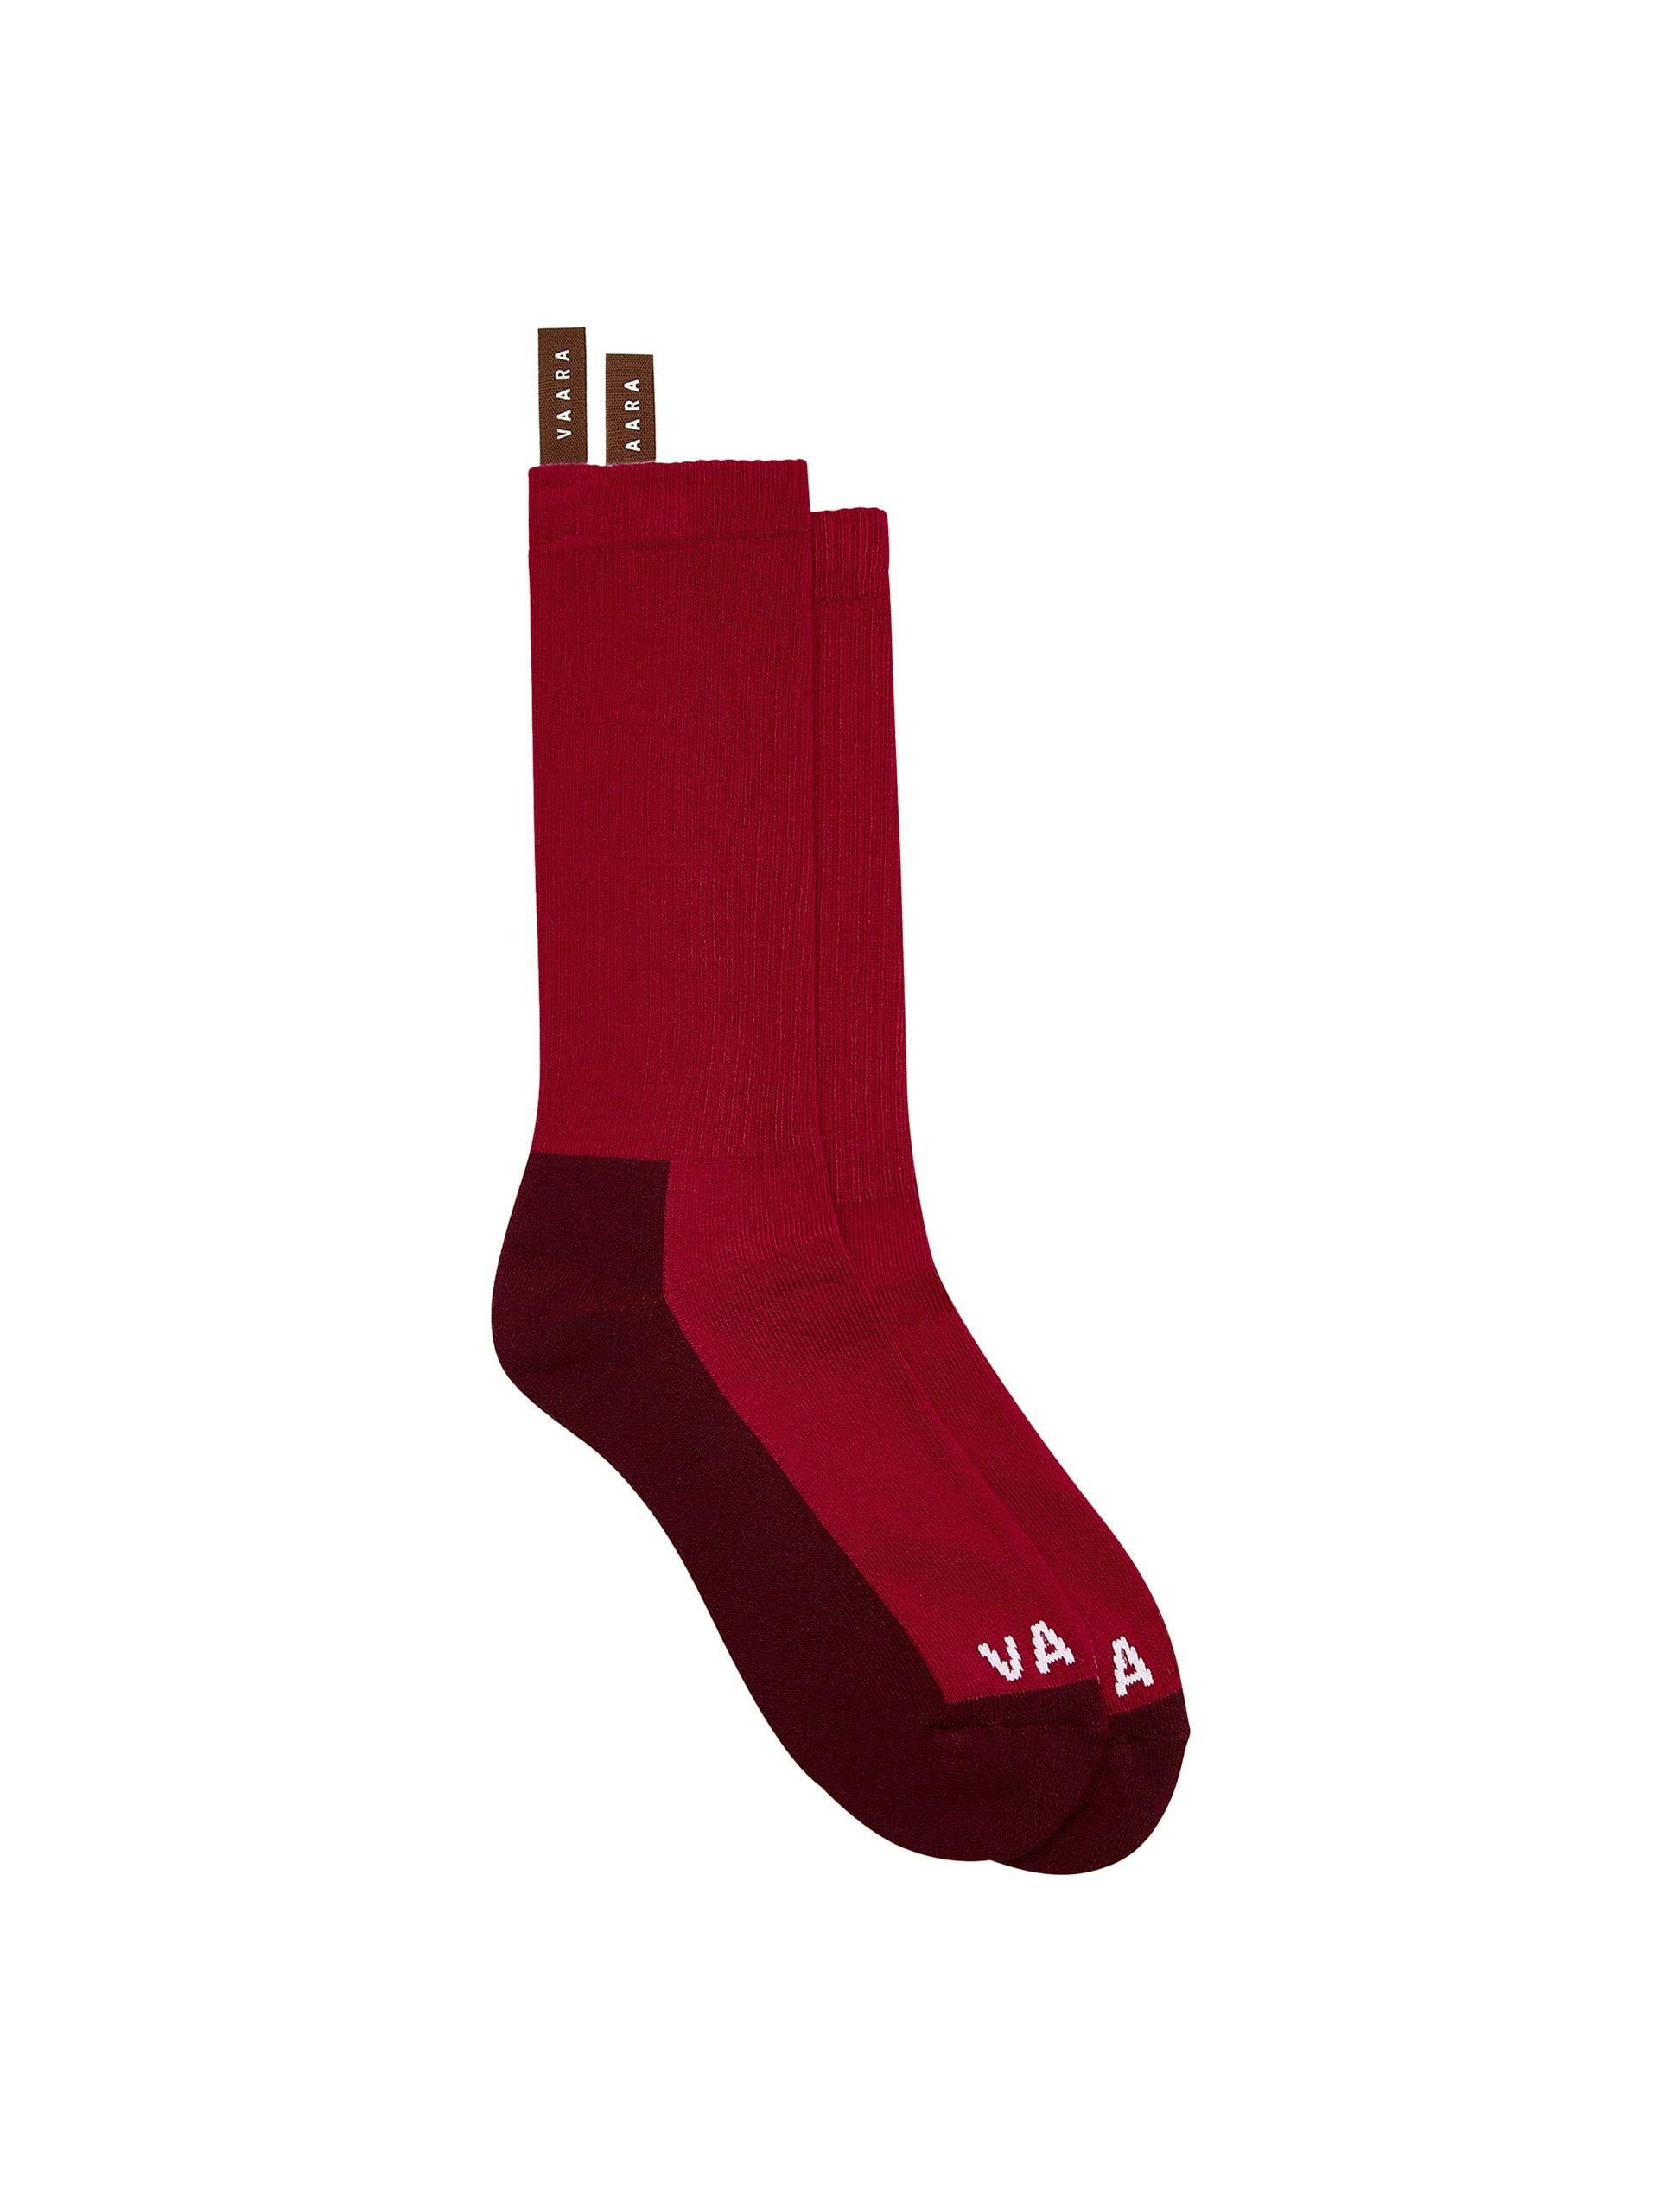 Red sports socks